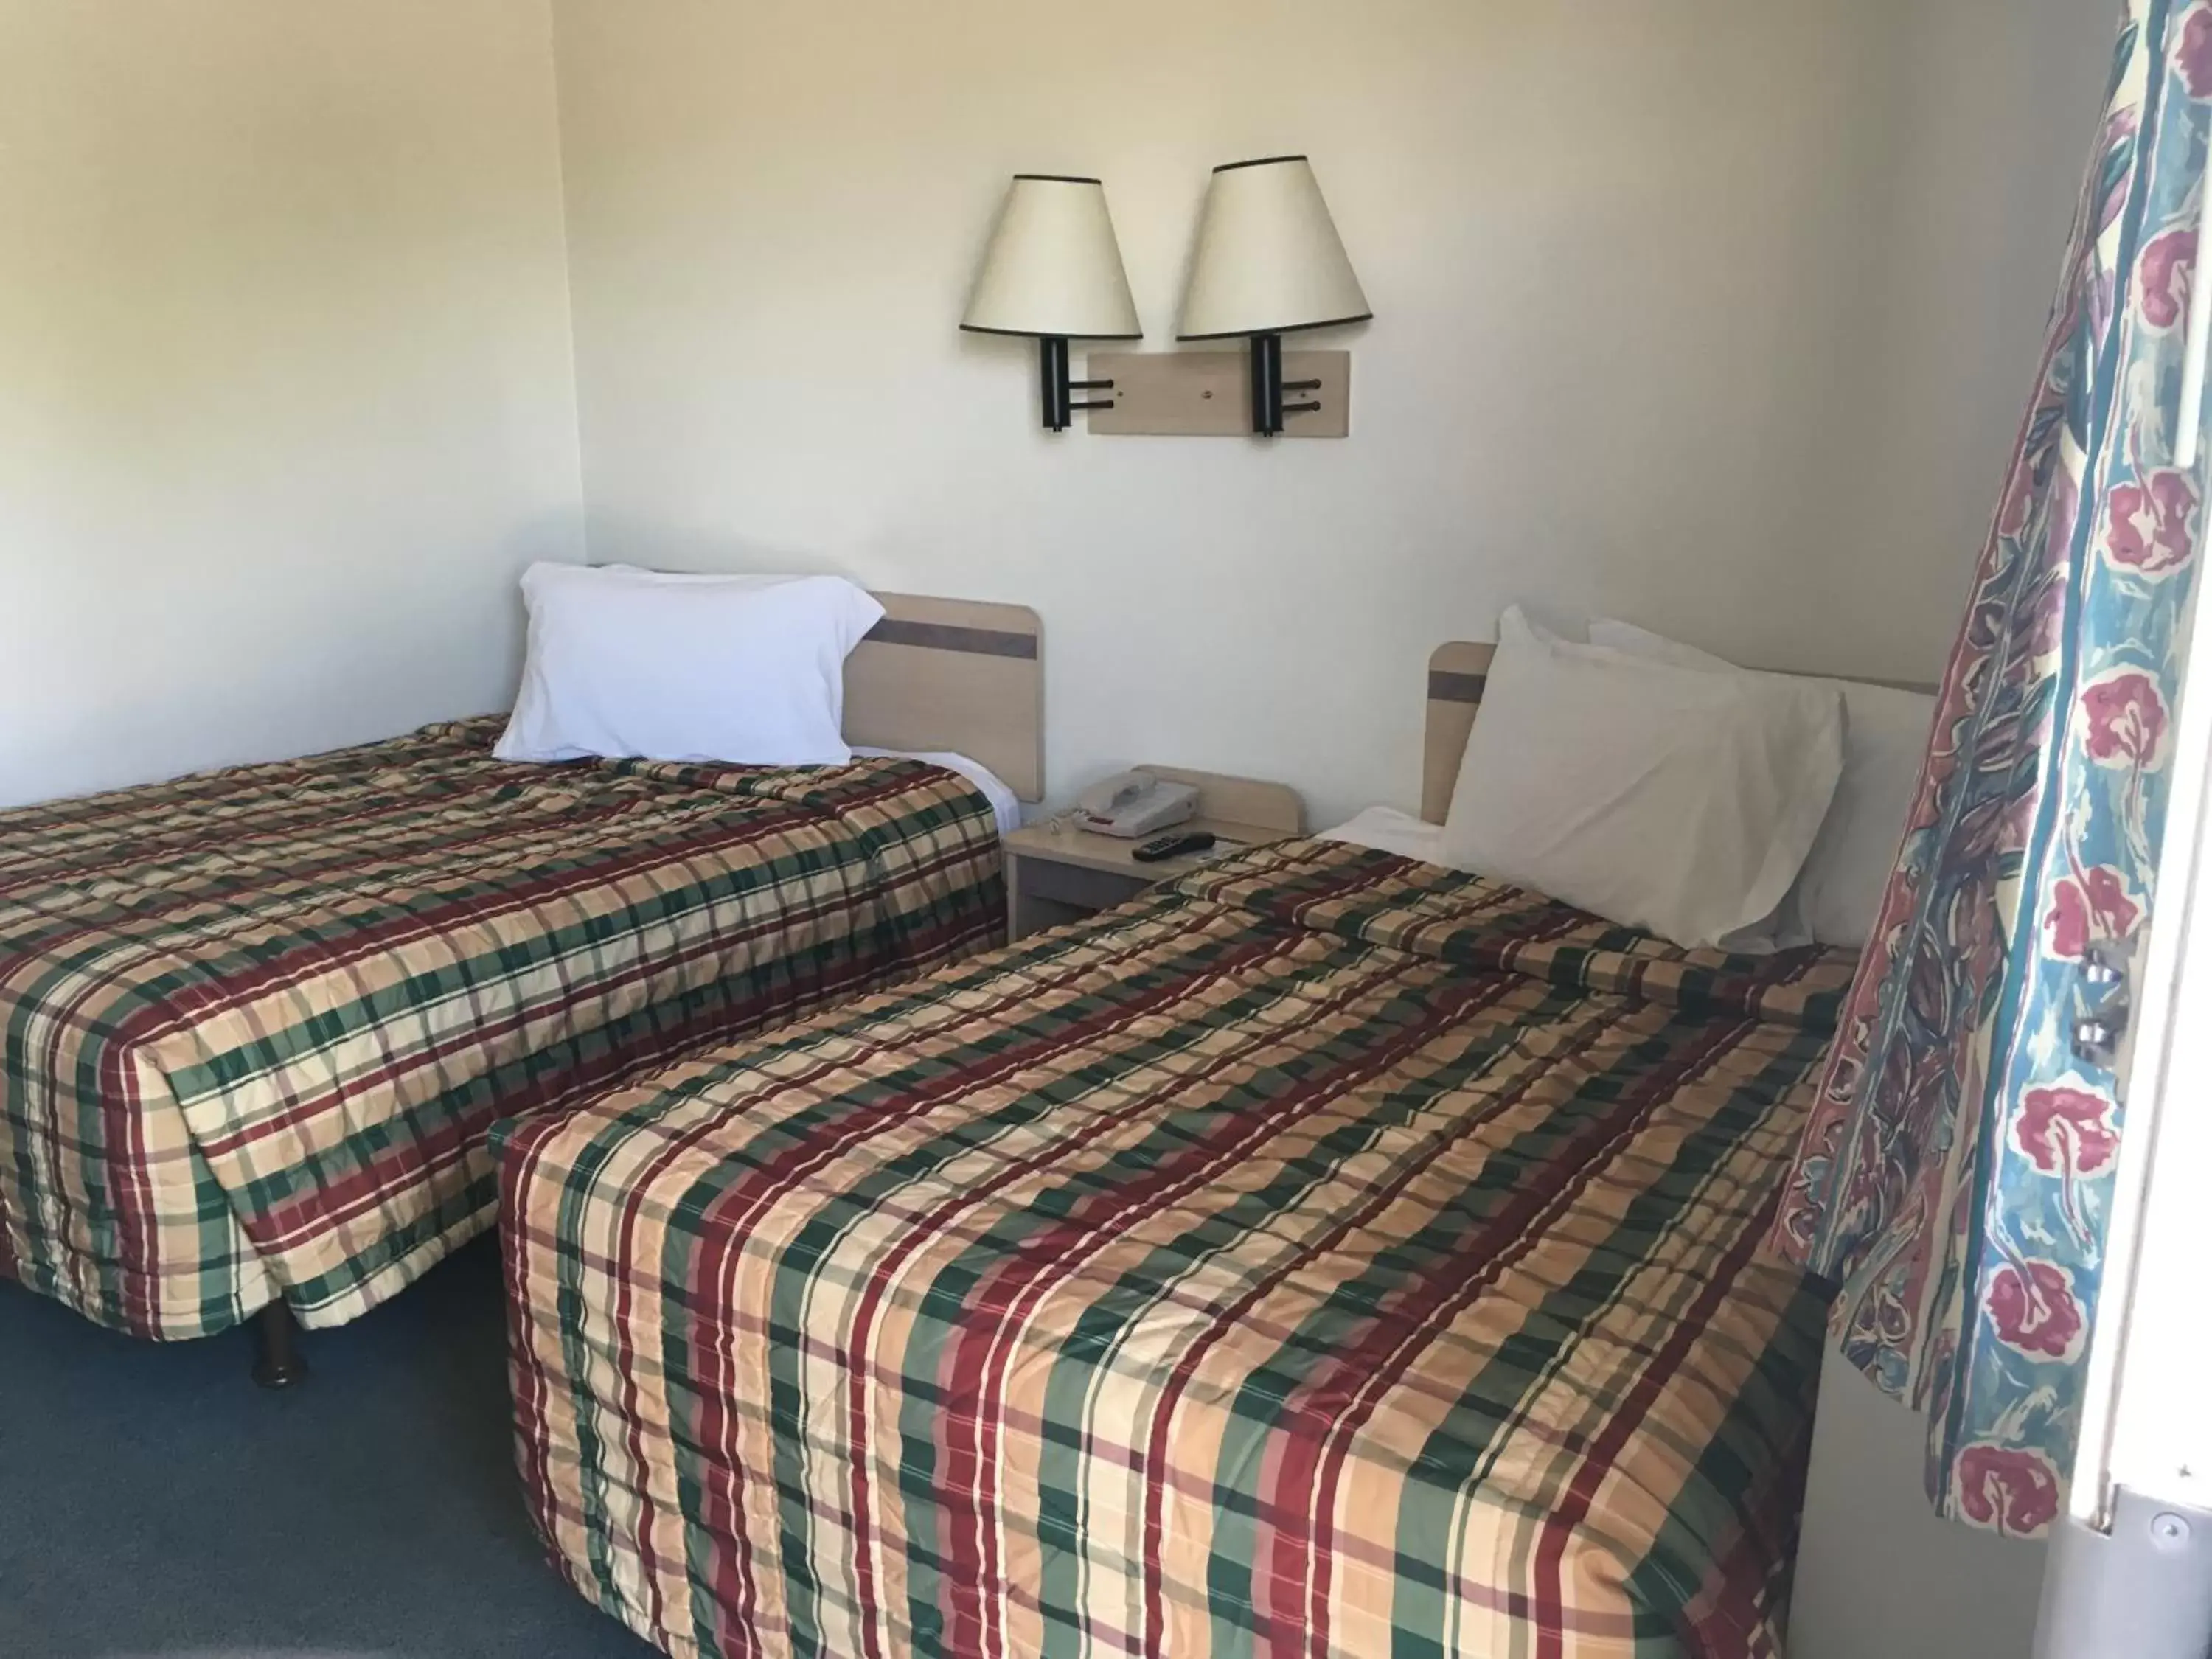 Bed in America's Best value Inn & Suites-Helena